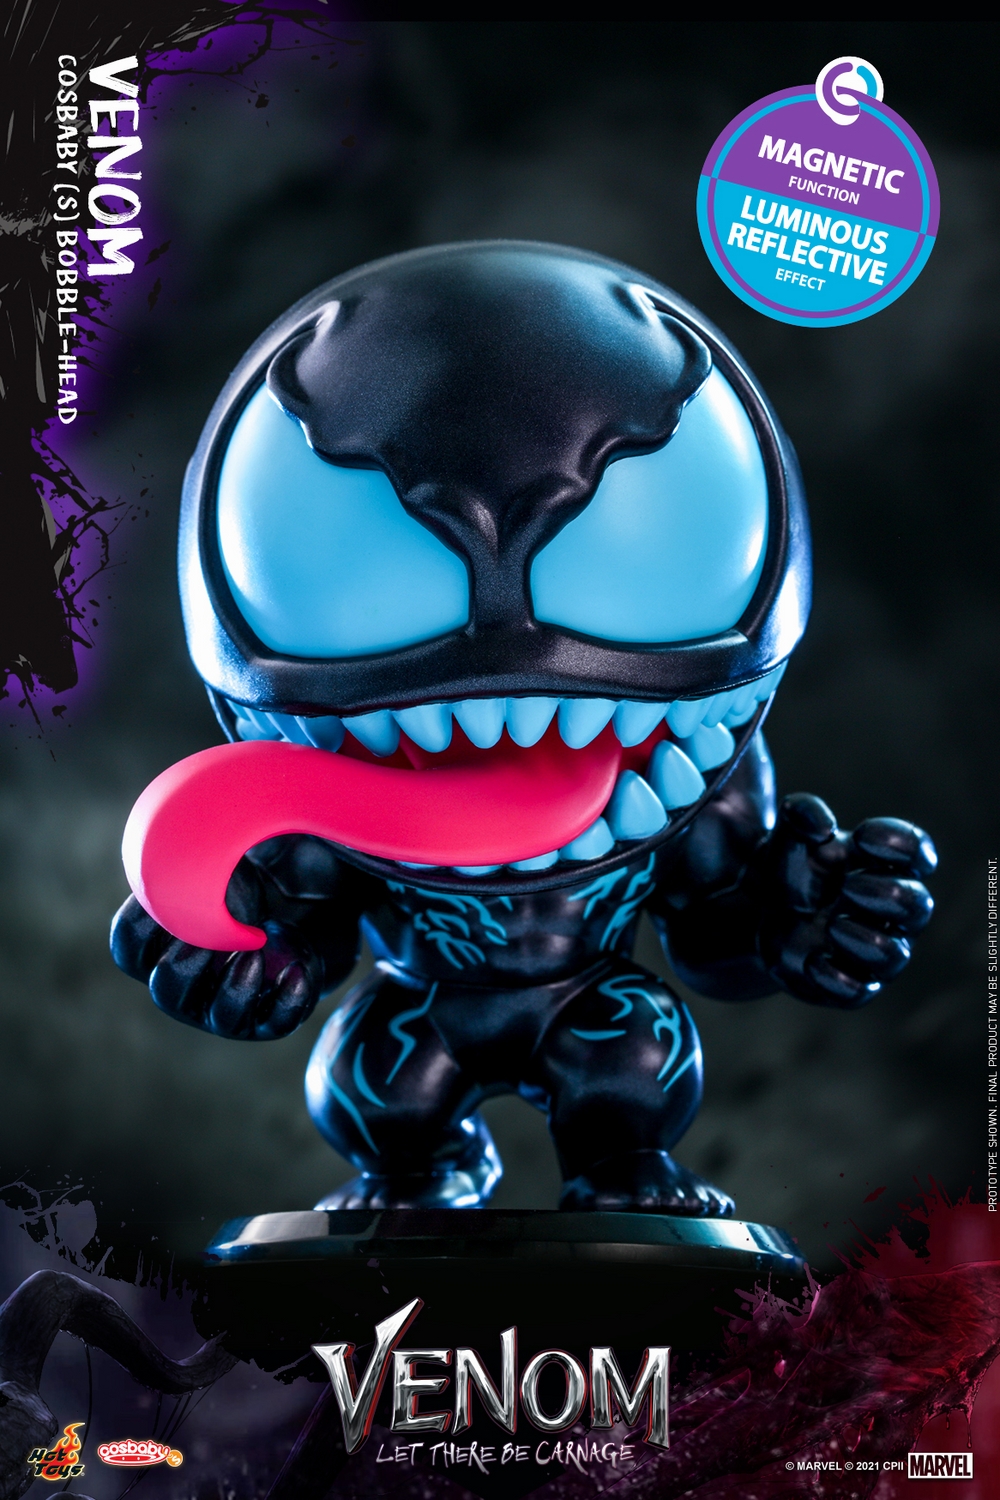 Hot Toys - Venom 2 - Venom Cosbaby_PR1.jpg